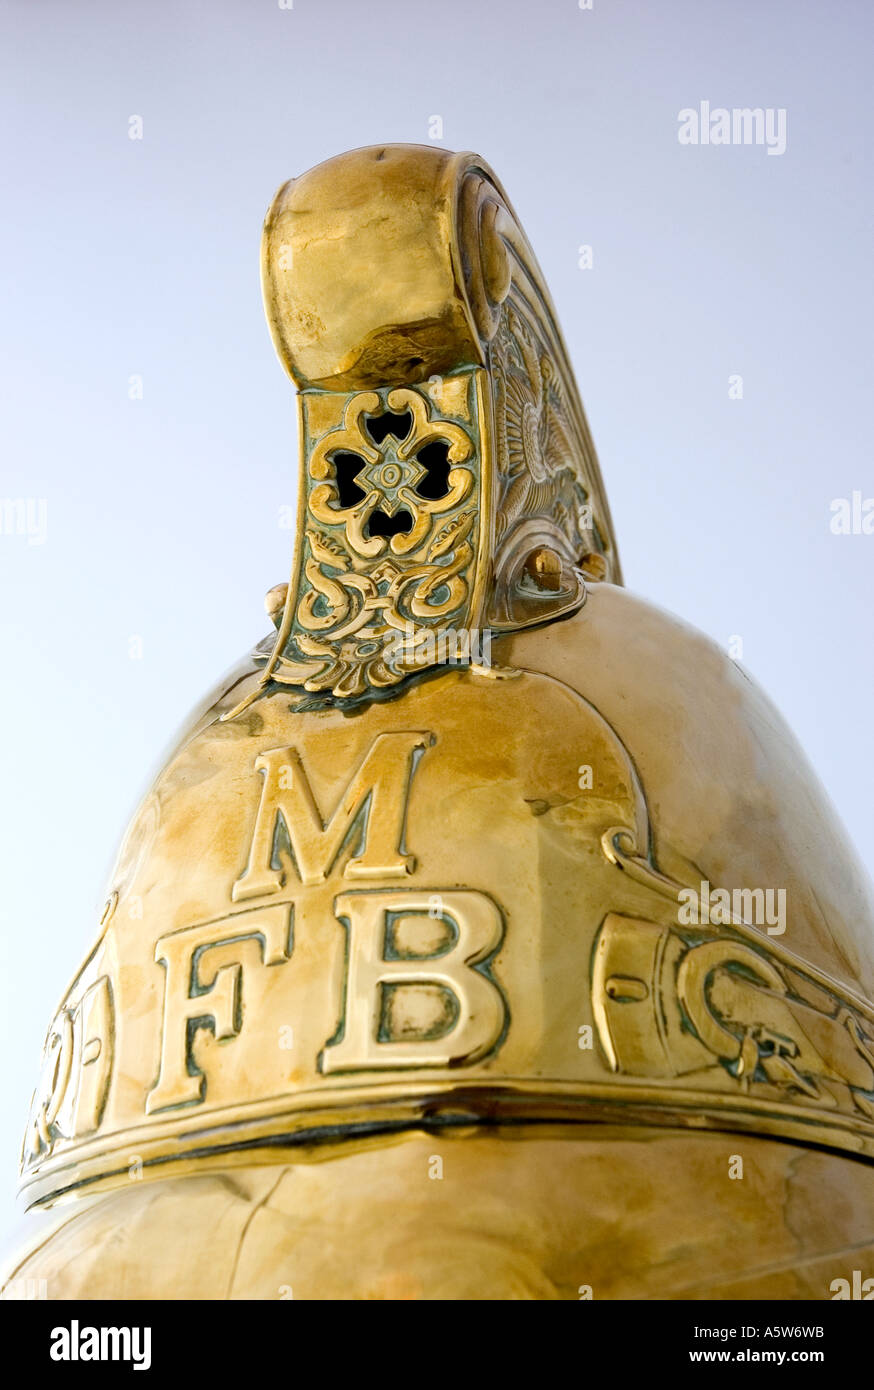 Closeup detail of a brass firemans helmet. DSC_8563 Stock Photo